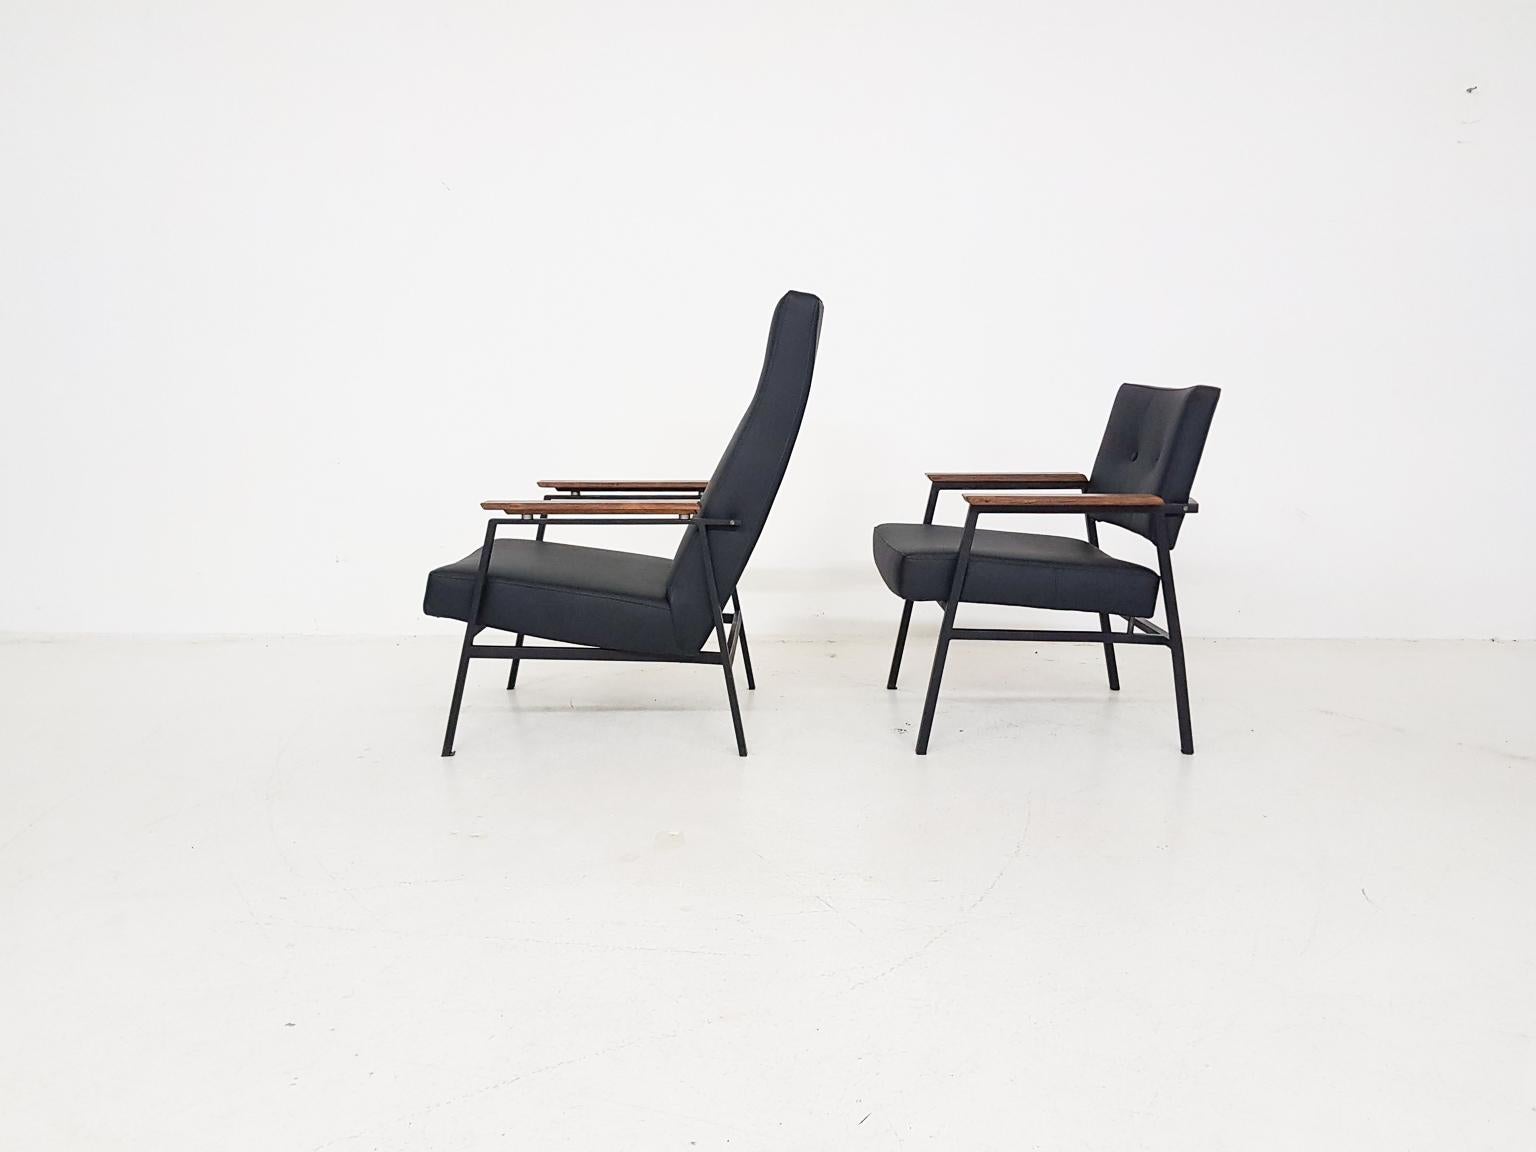 Paar Loungesessel aus Stahl und schwarzem Kunstleder, entworfen von Avanti aus den Niederlanden in den 1960er Jahren.

Das Paar verfügt über zwei verschiedene Versionen, die oft als 